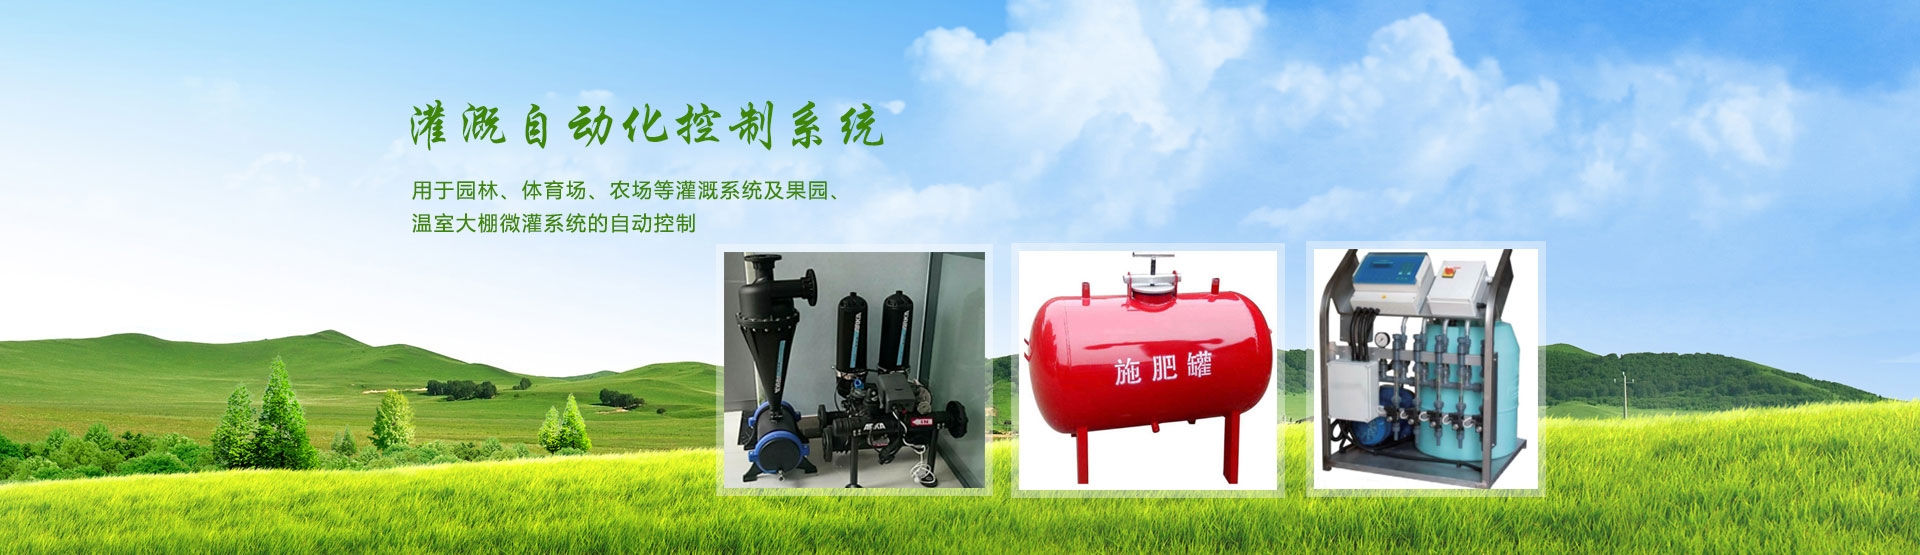 滴灌自動化灌溉系統,自動化灌溉控制器